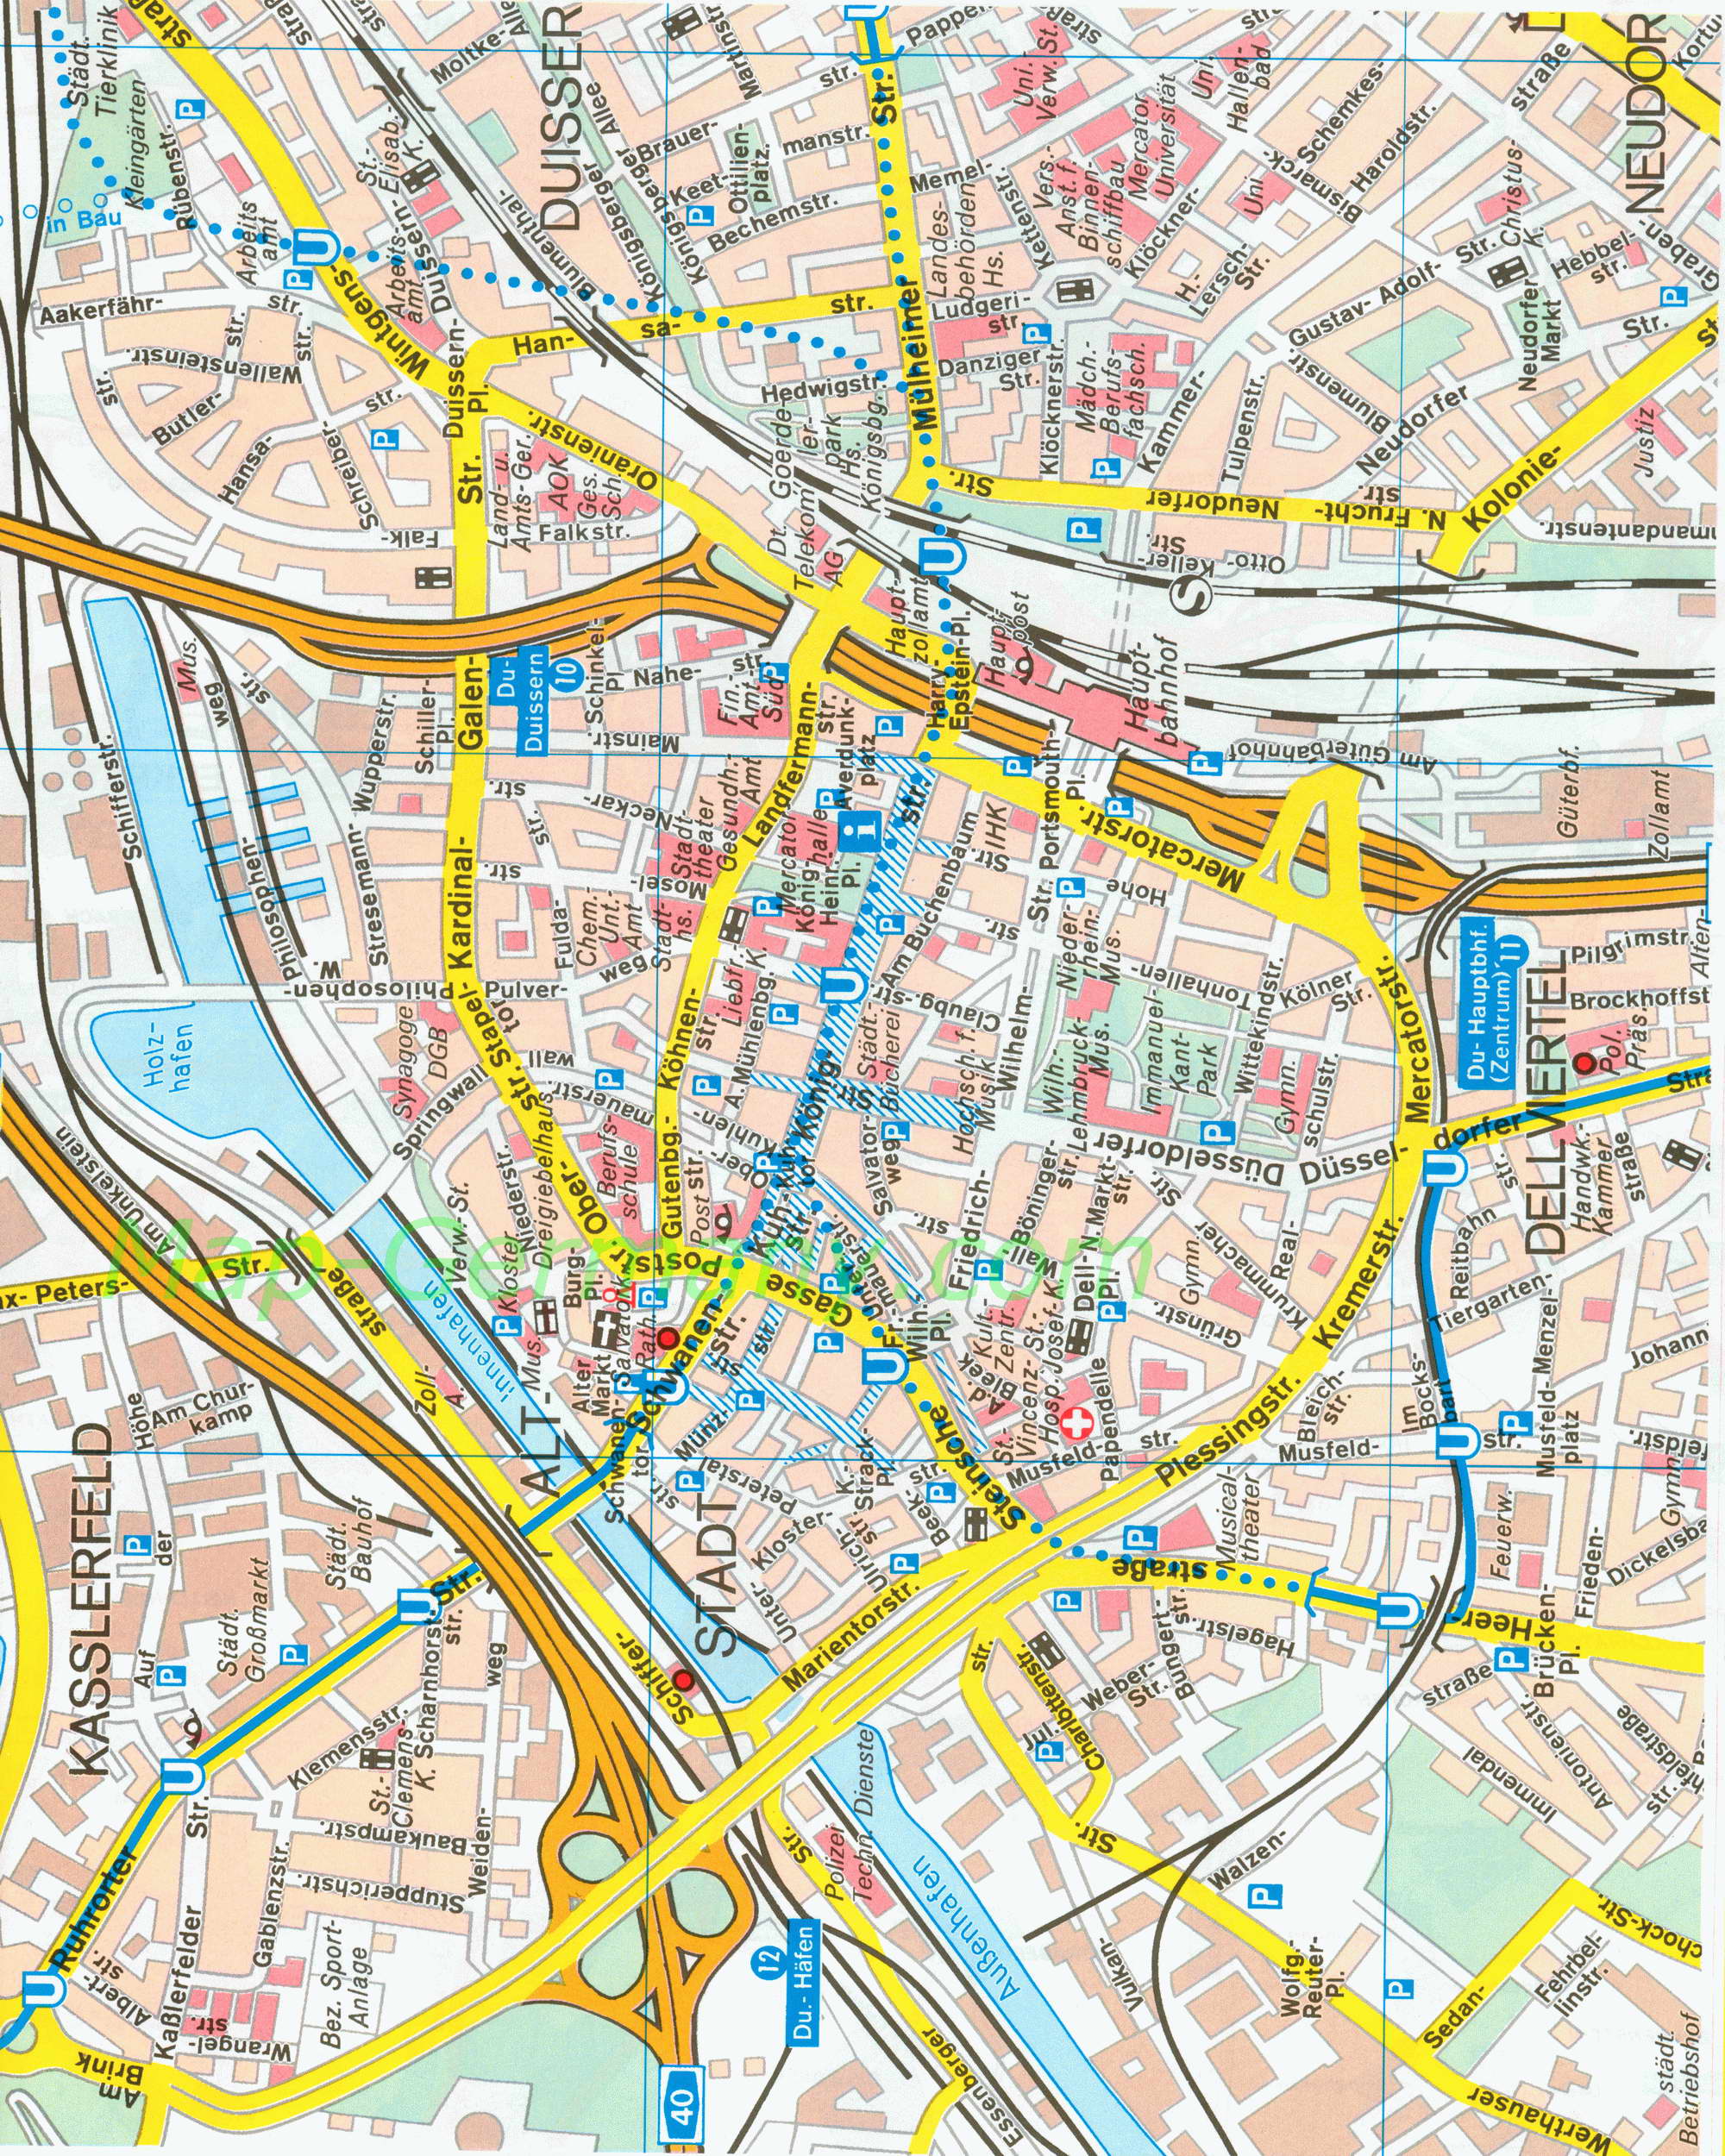 Карта улиц Дуйсбурга. Подробная карта улиц города Дуйсбург, Германия, A0 - 